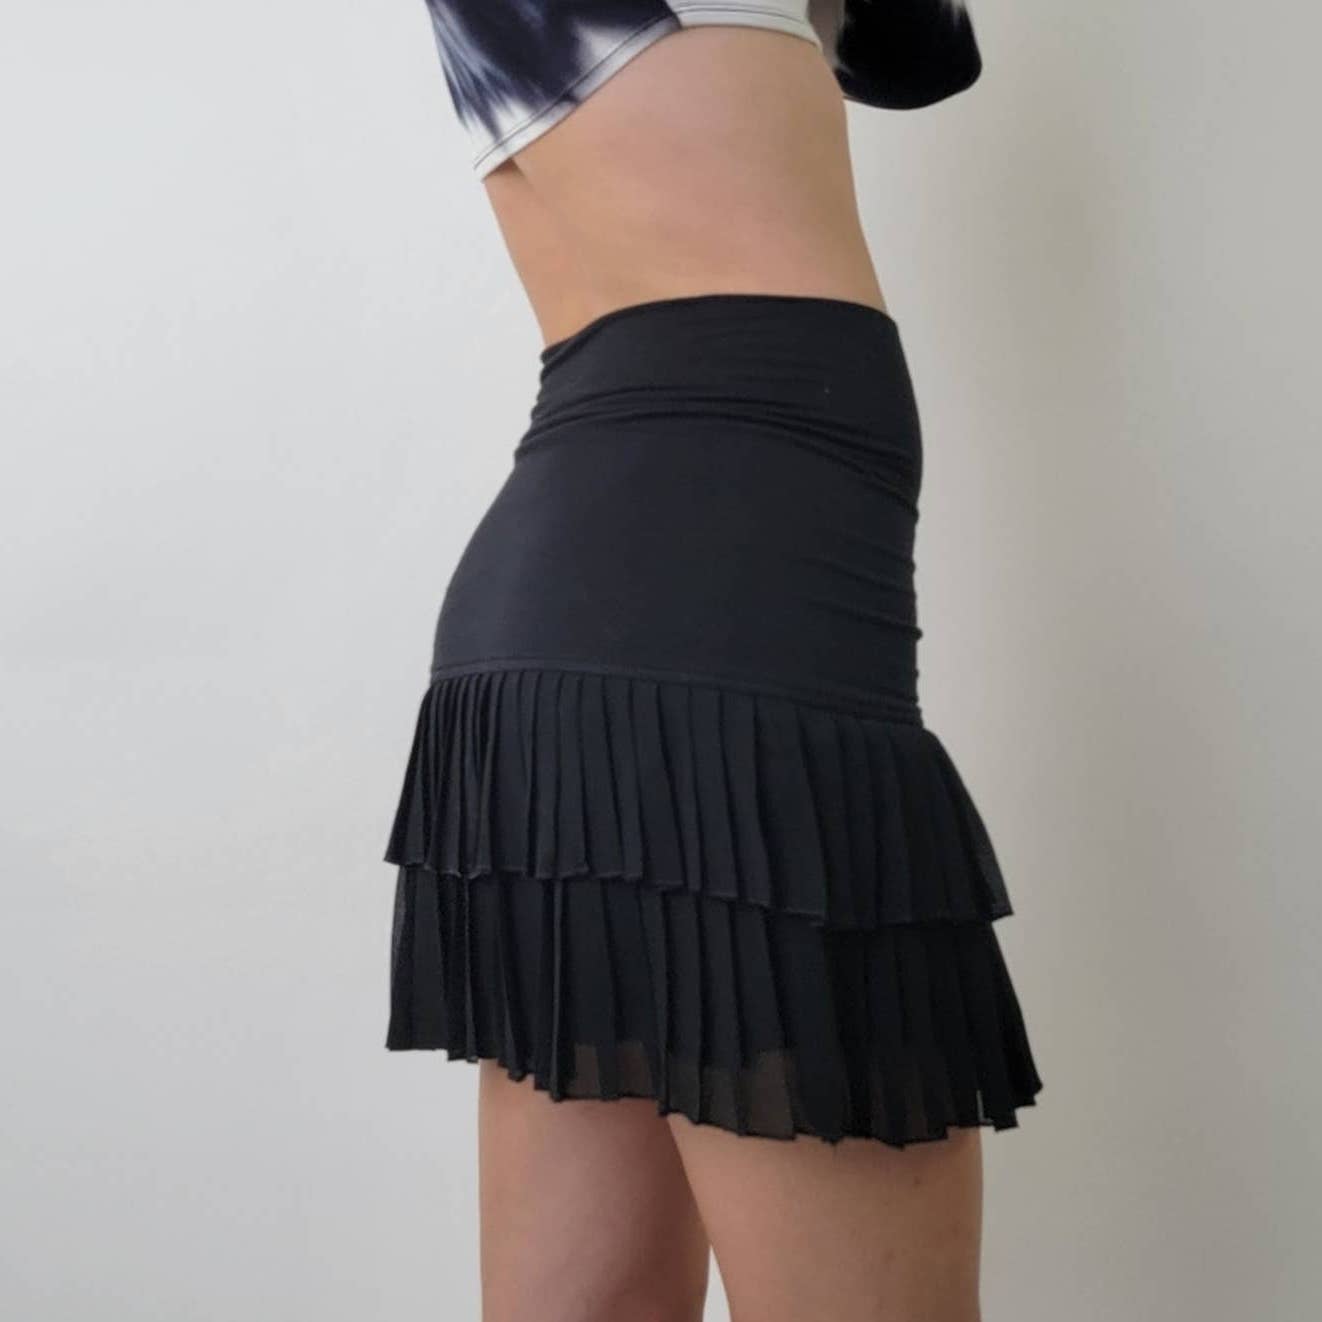 xxi Frilly Dancer Skirt - S